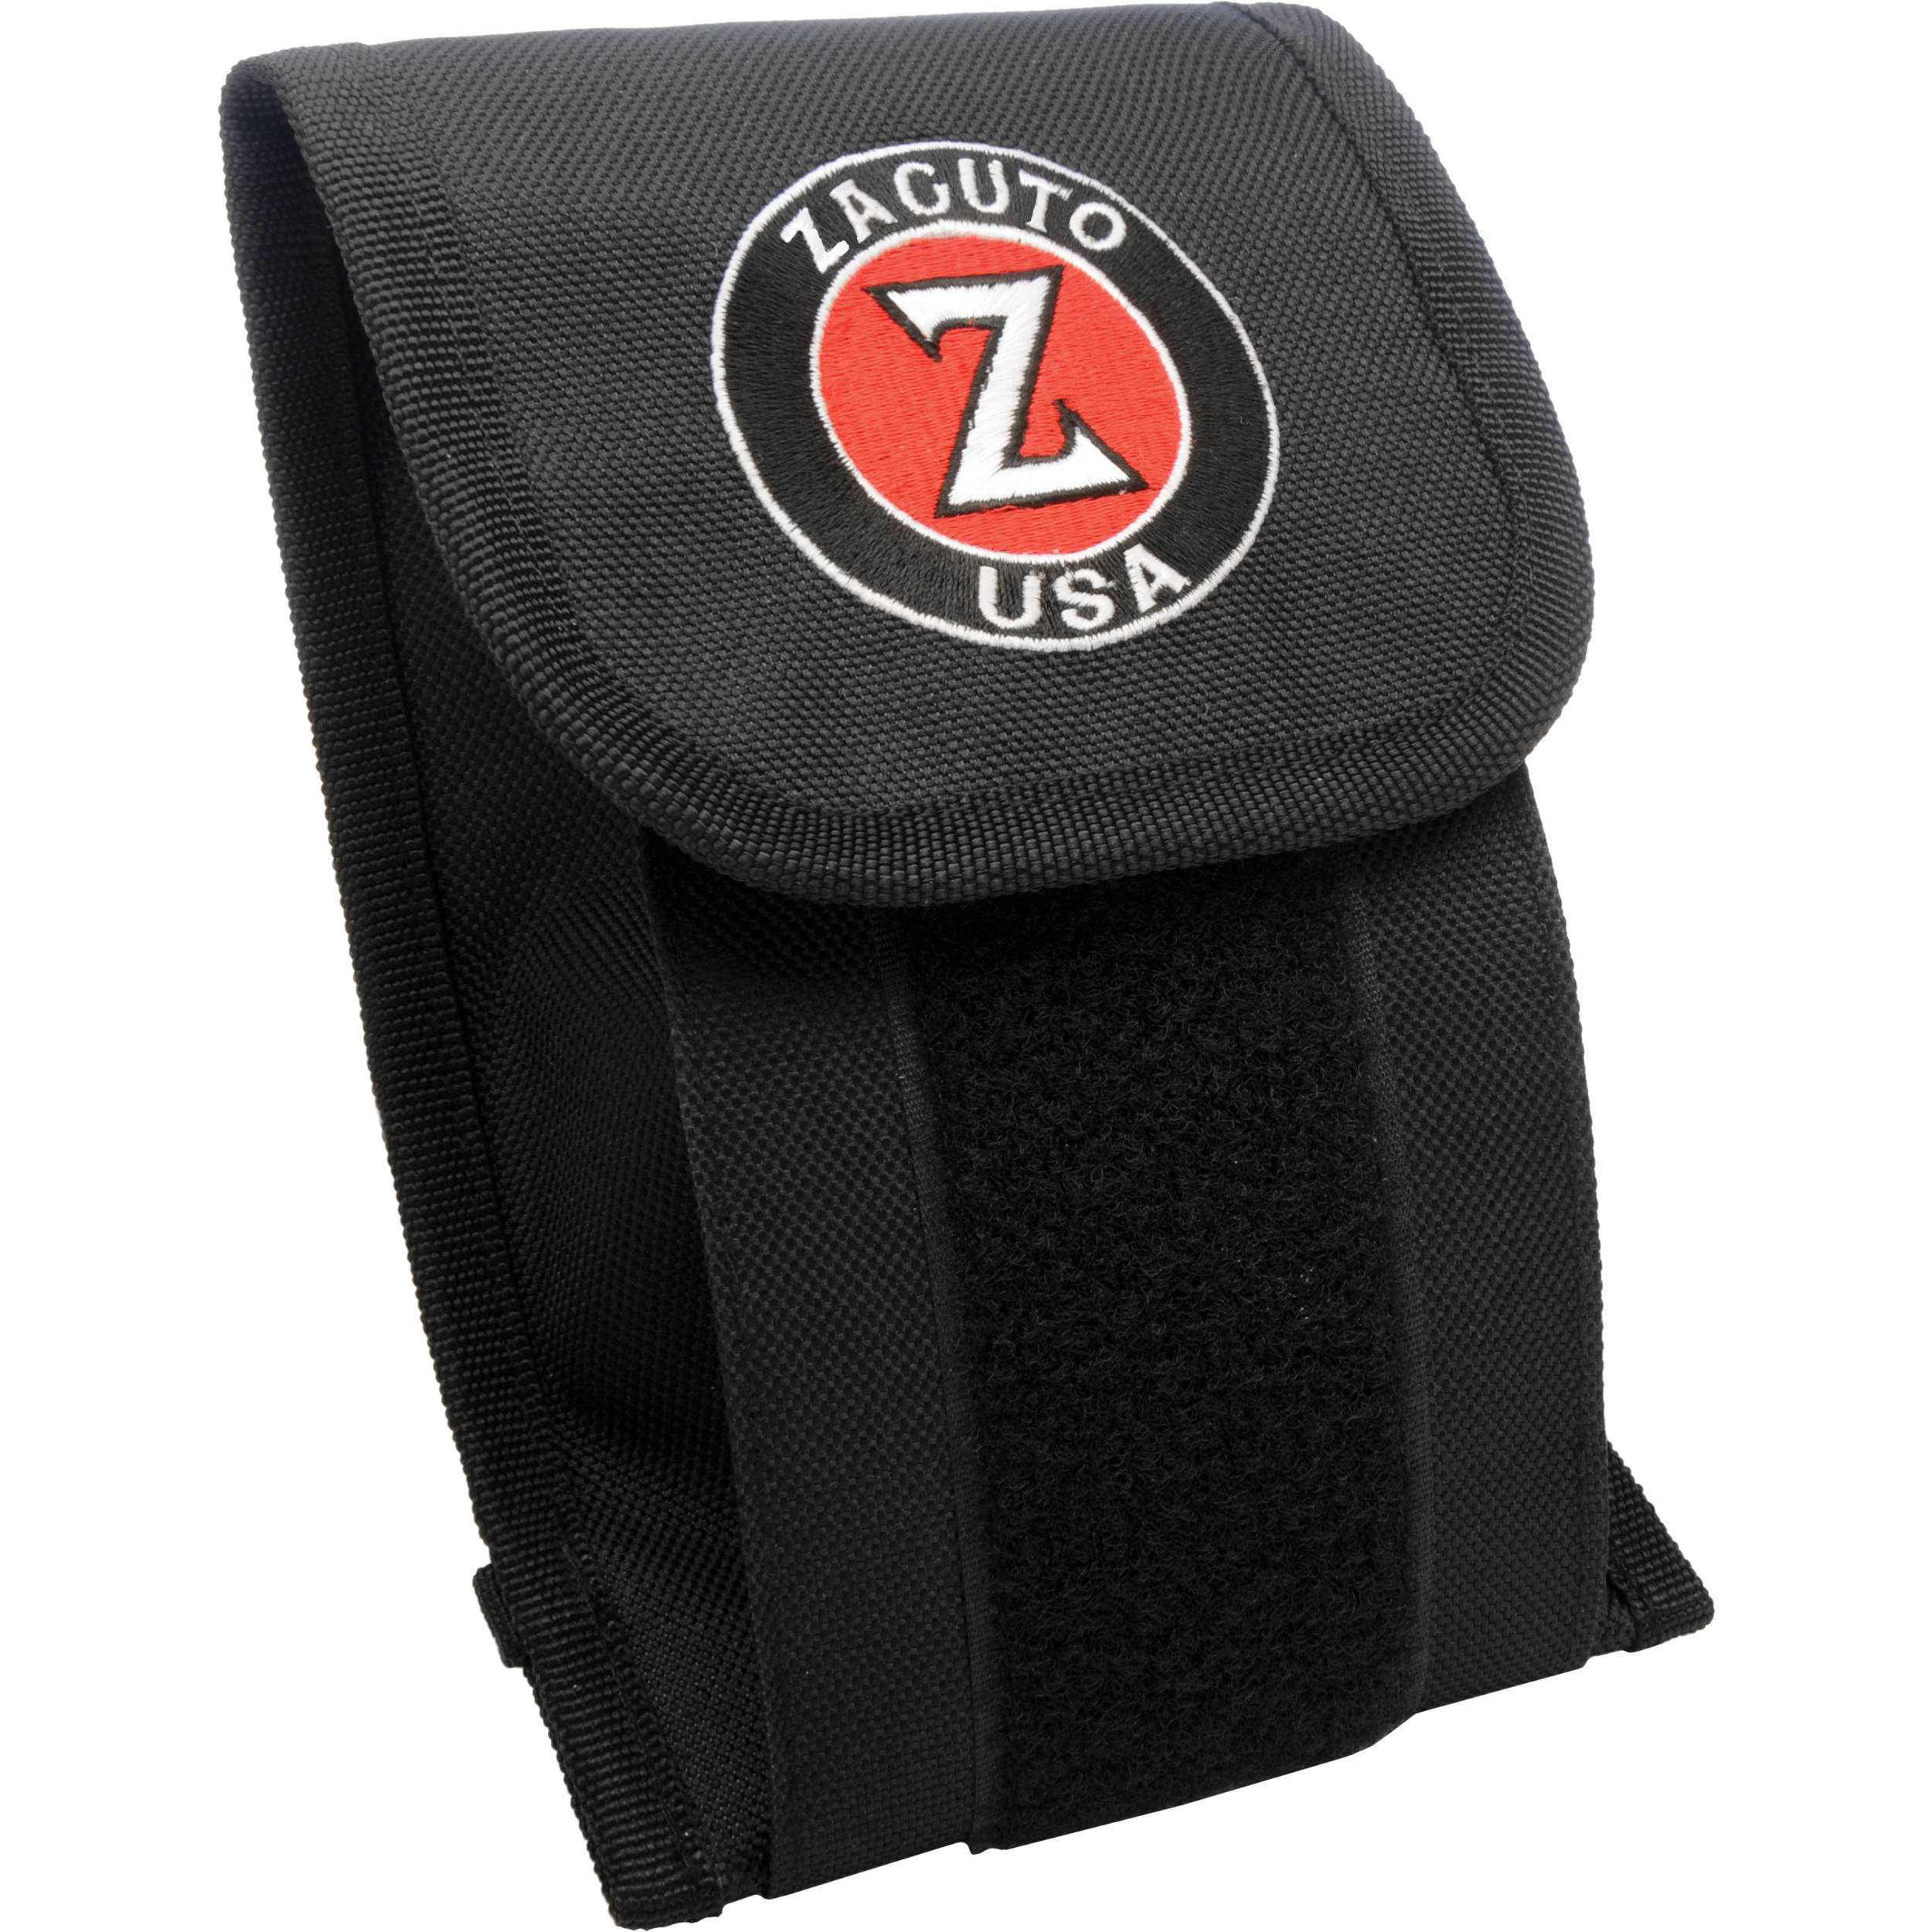 Zacuto Z-Finder Storage Case